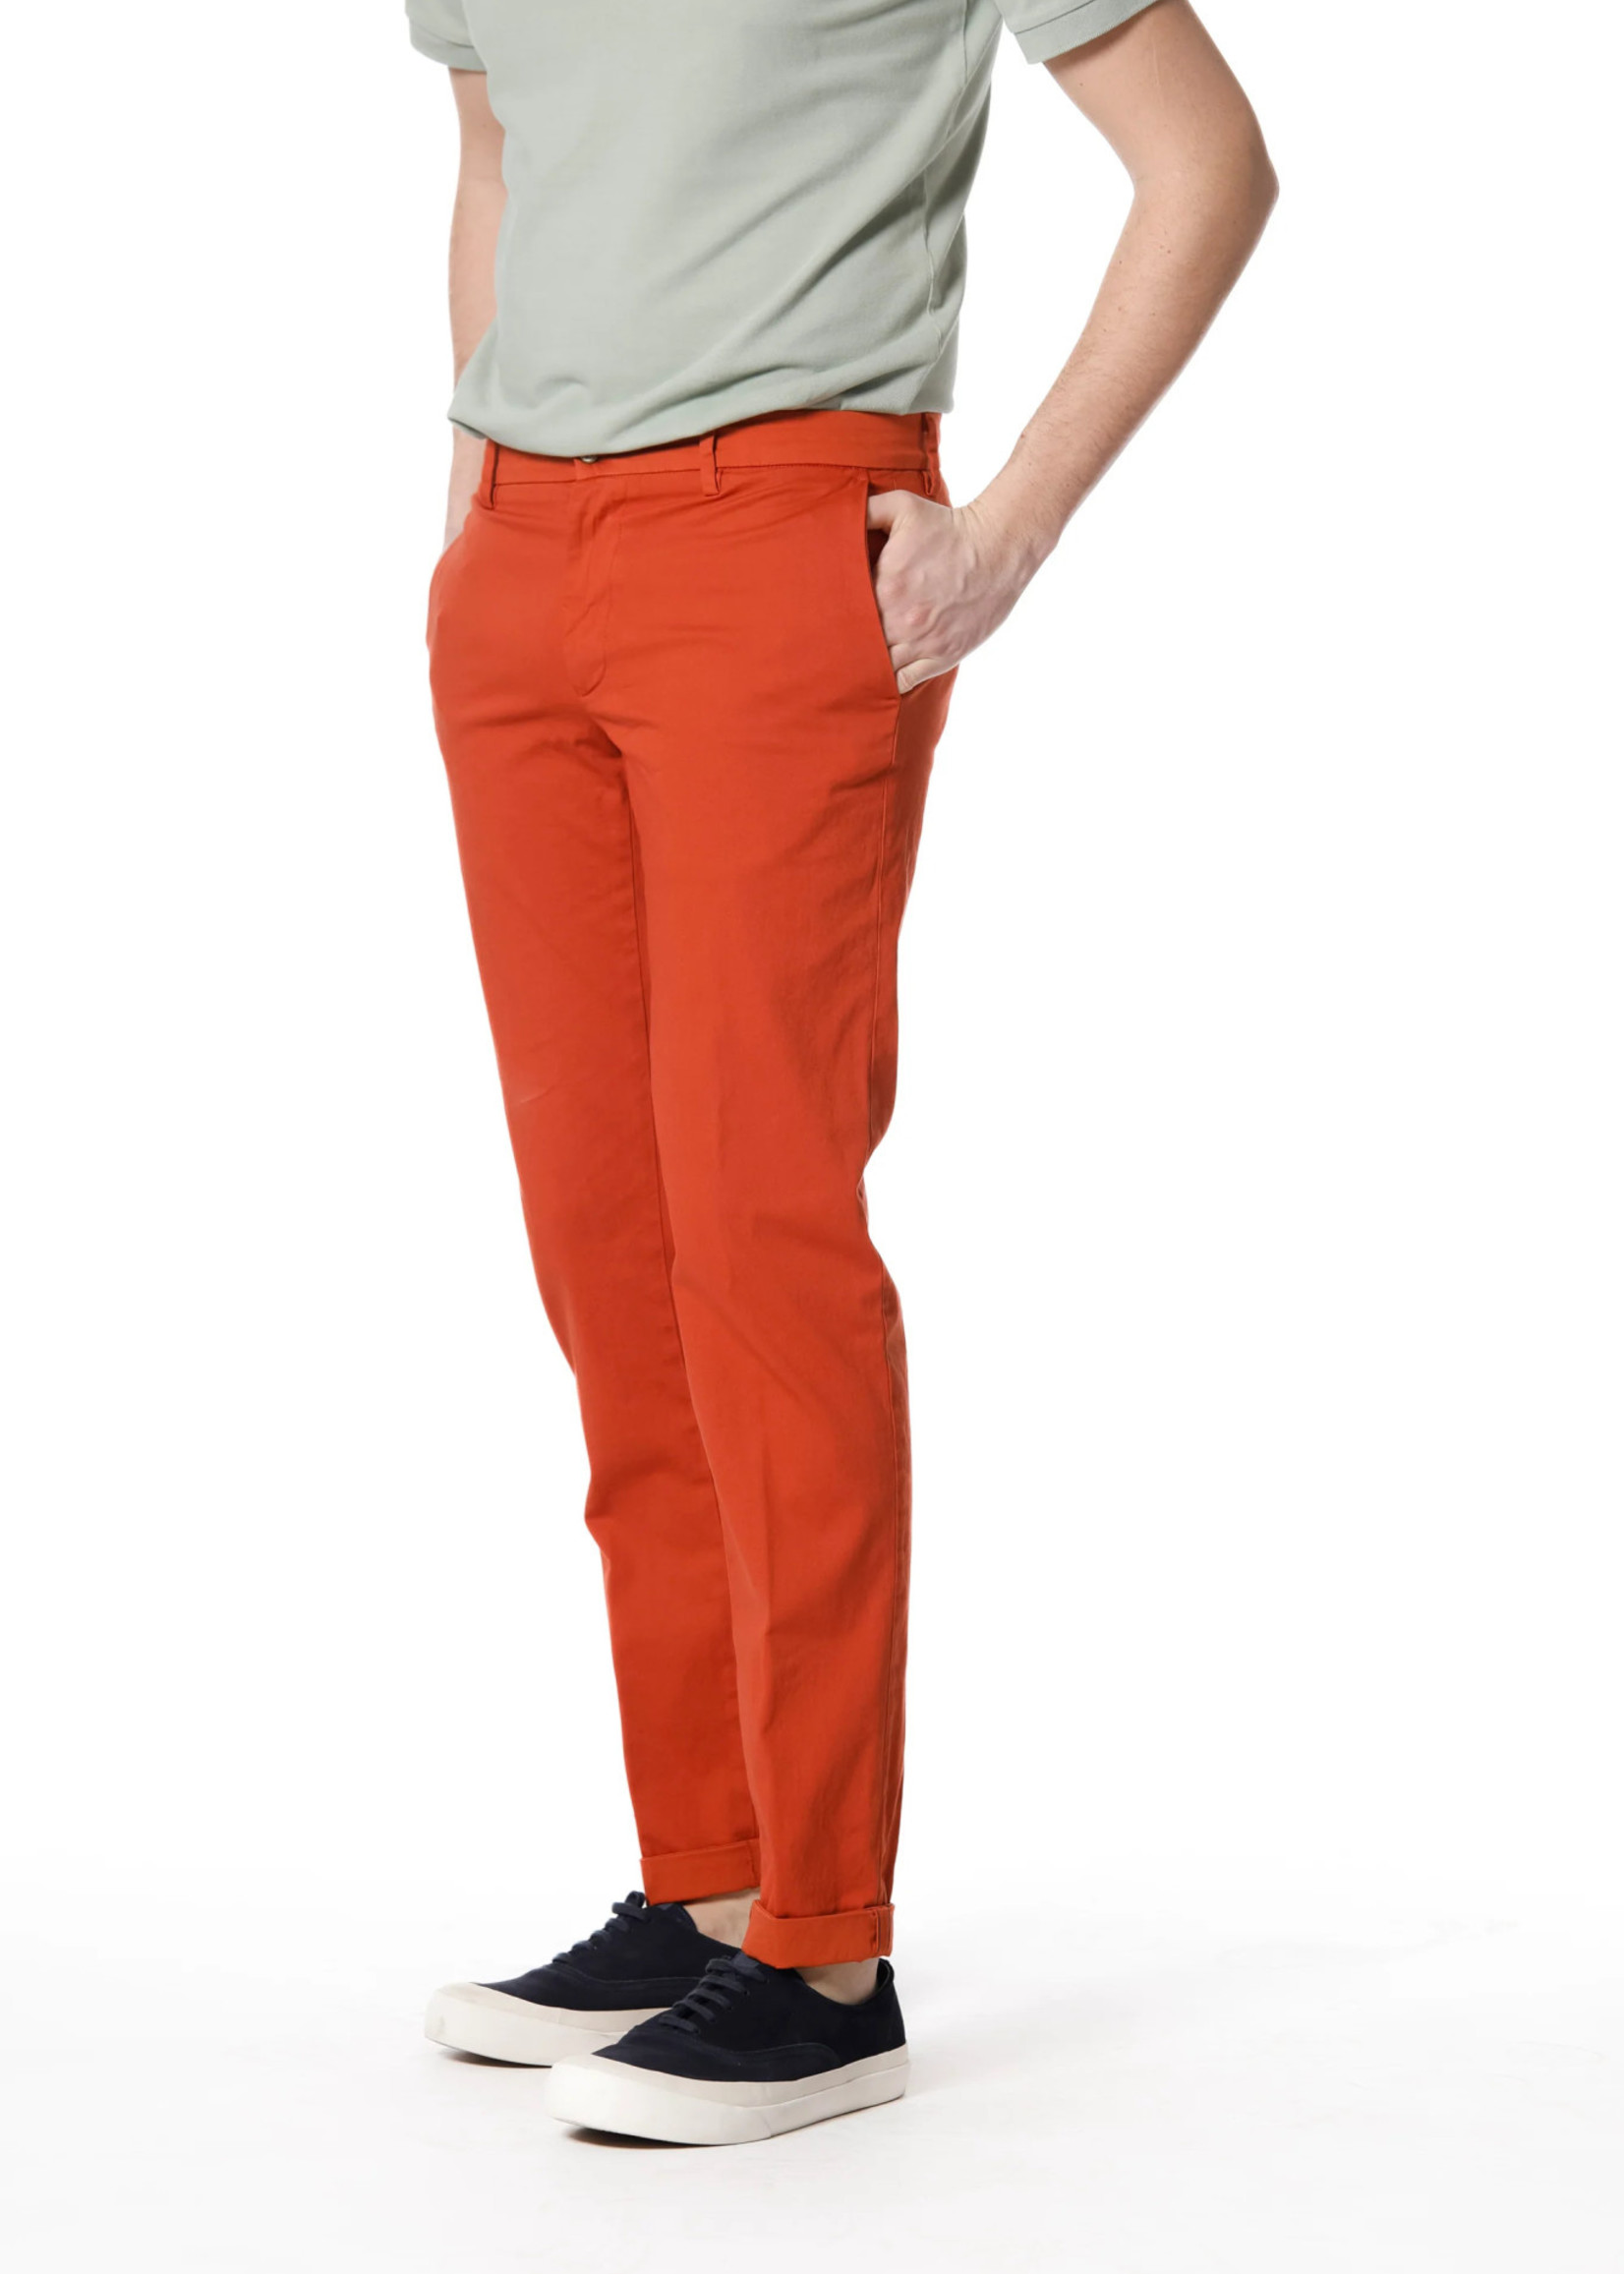 MASON'S Torino Style Pantalon chino homme en satin stretch Slim fit - Corail